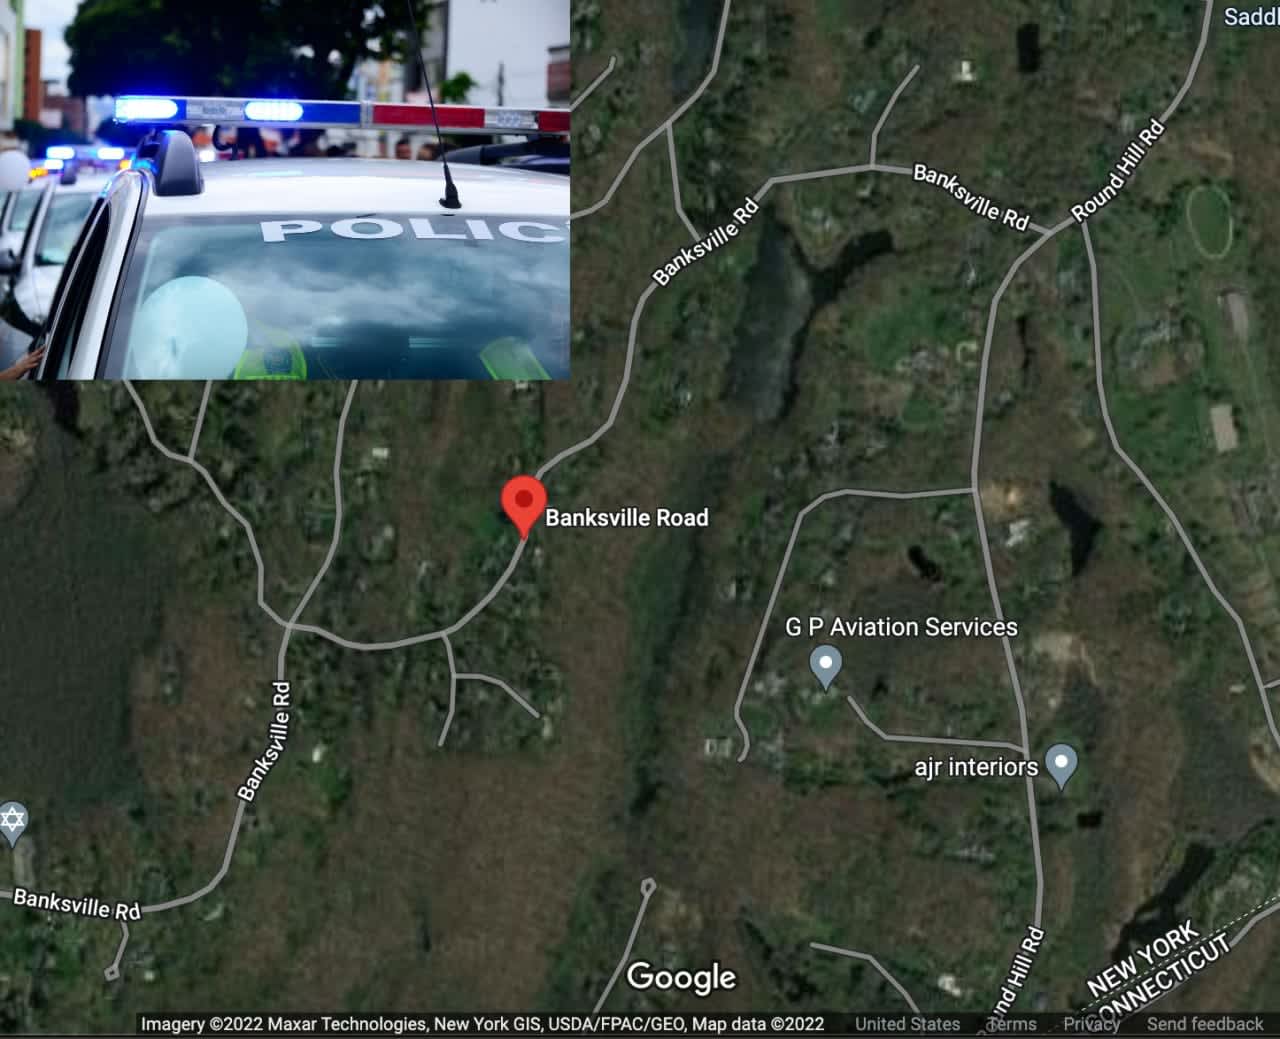 The stolen BMW was found on Banksville Road in Armonk.